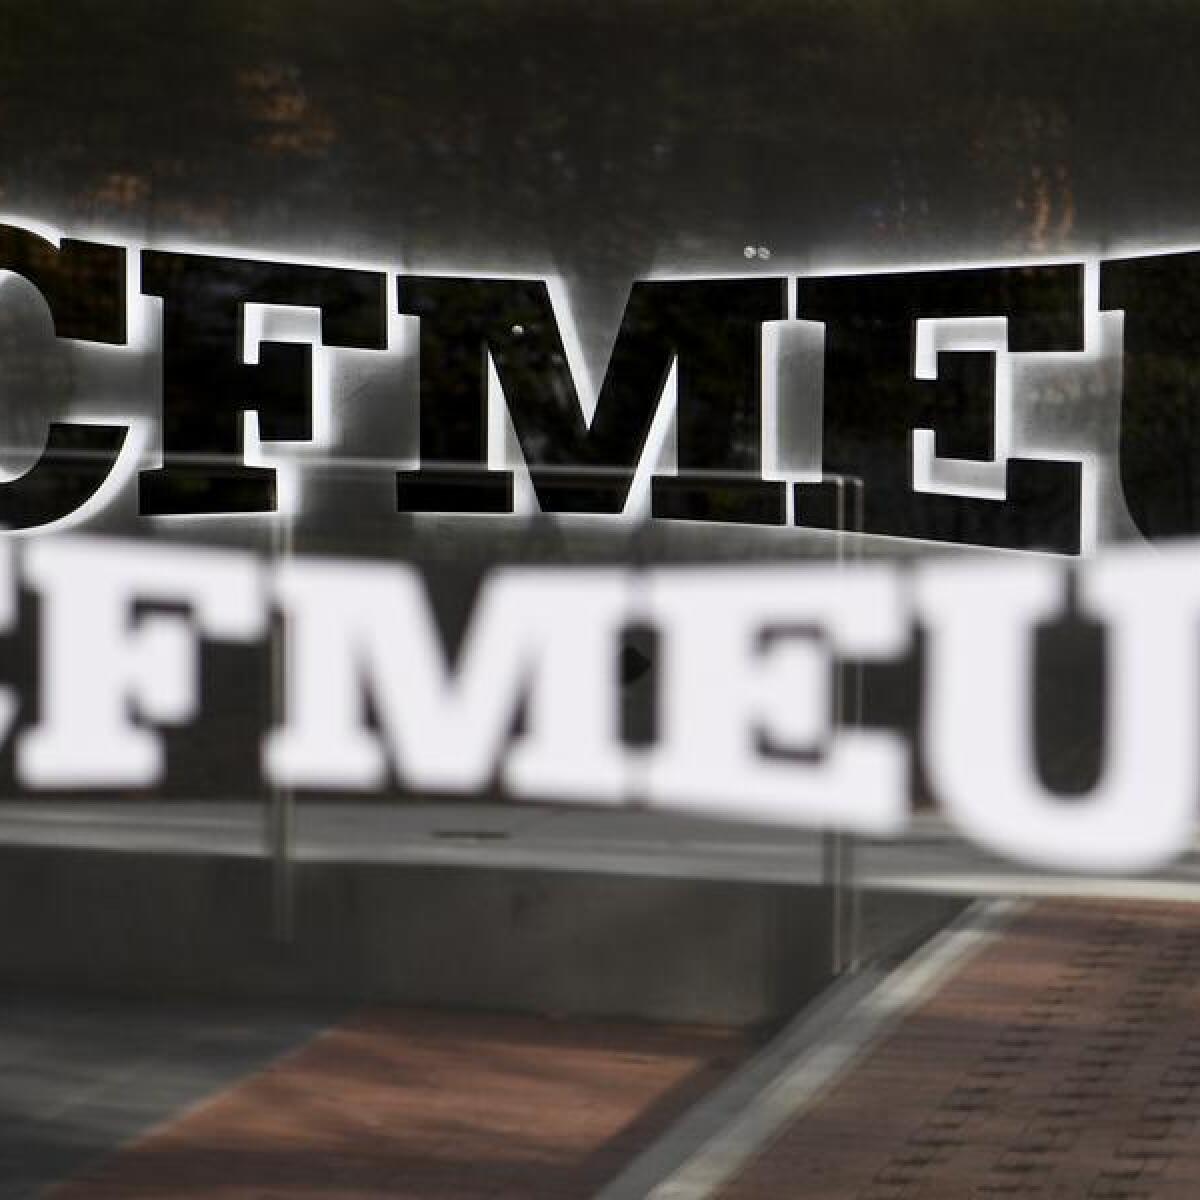 The CFMEU sign